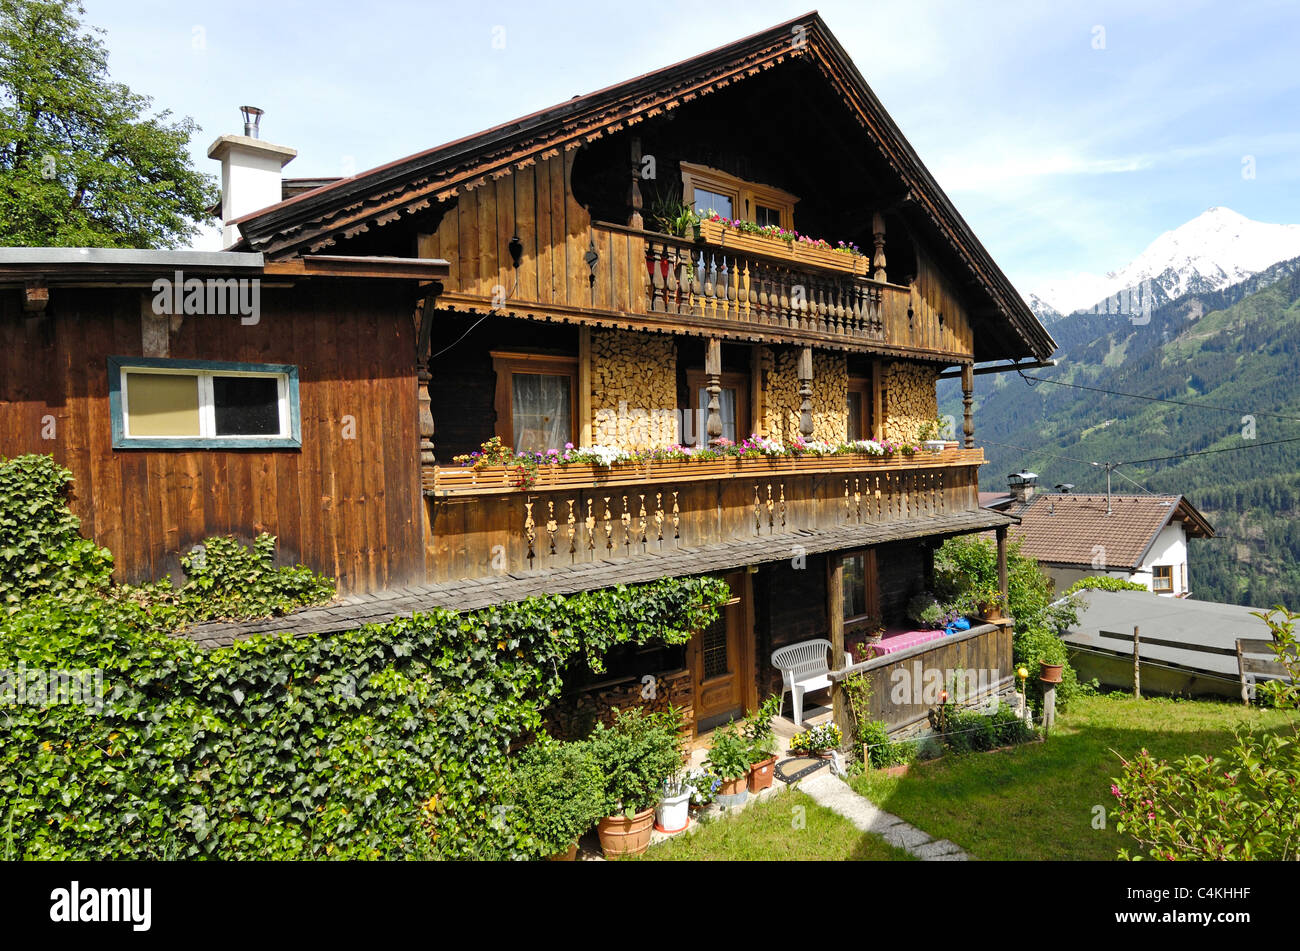 Tradizionale austriaca casa in legno con balconi colorati e cesti di fiori  Foto stock - Alamy